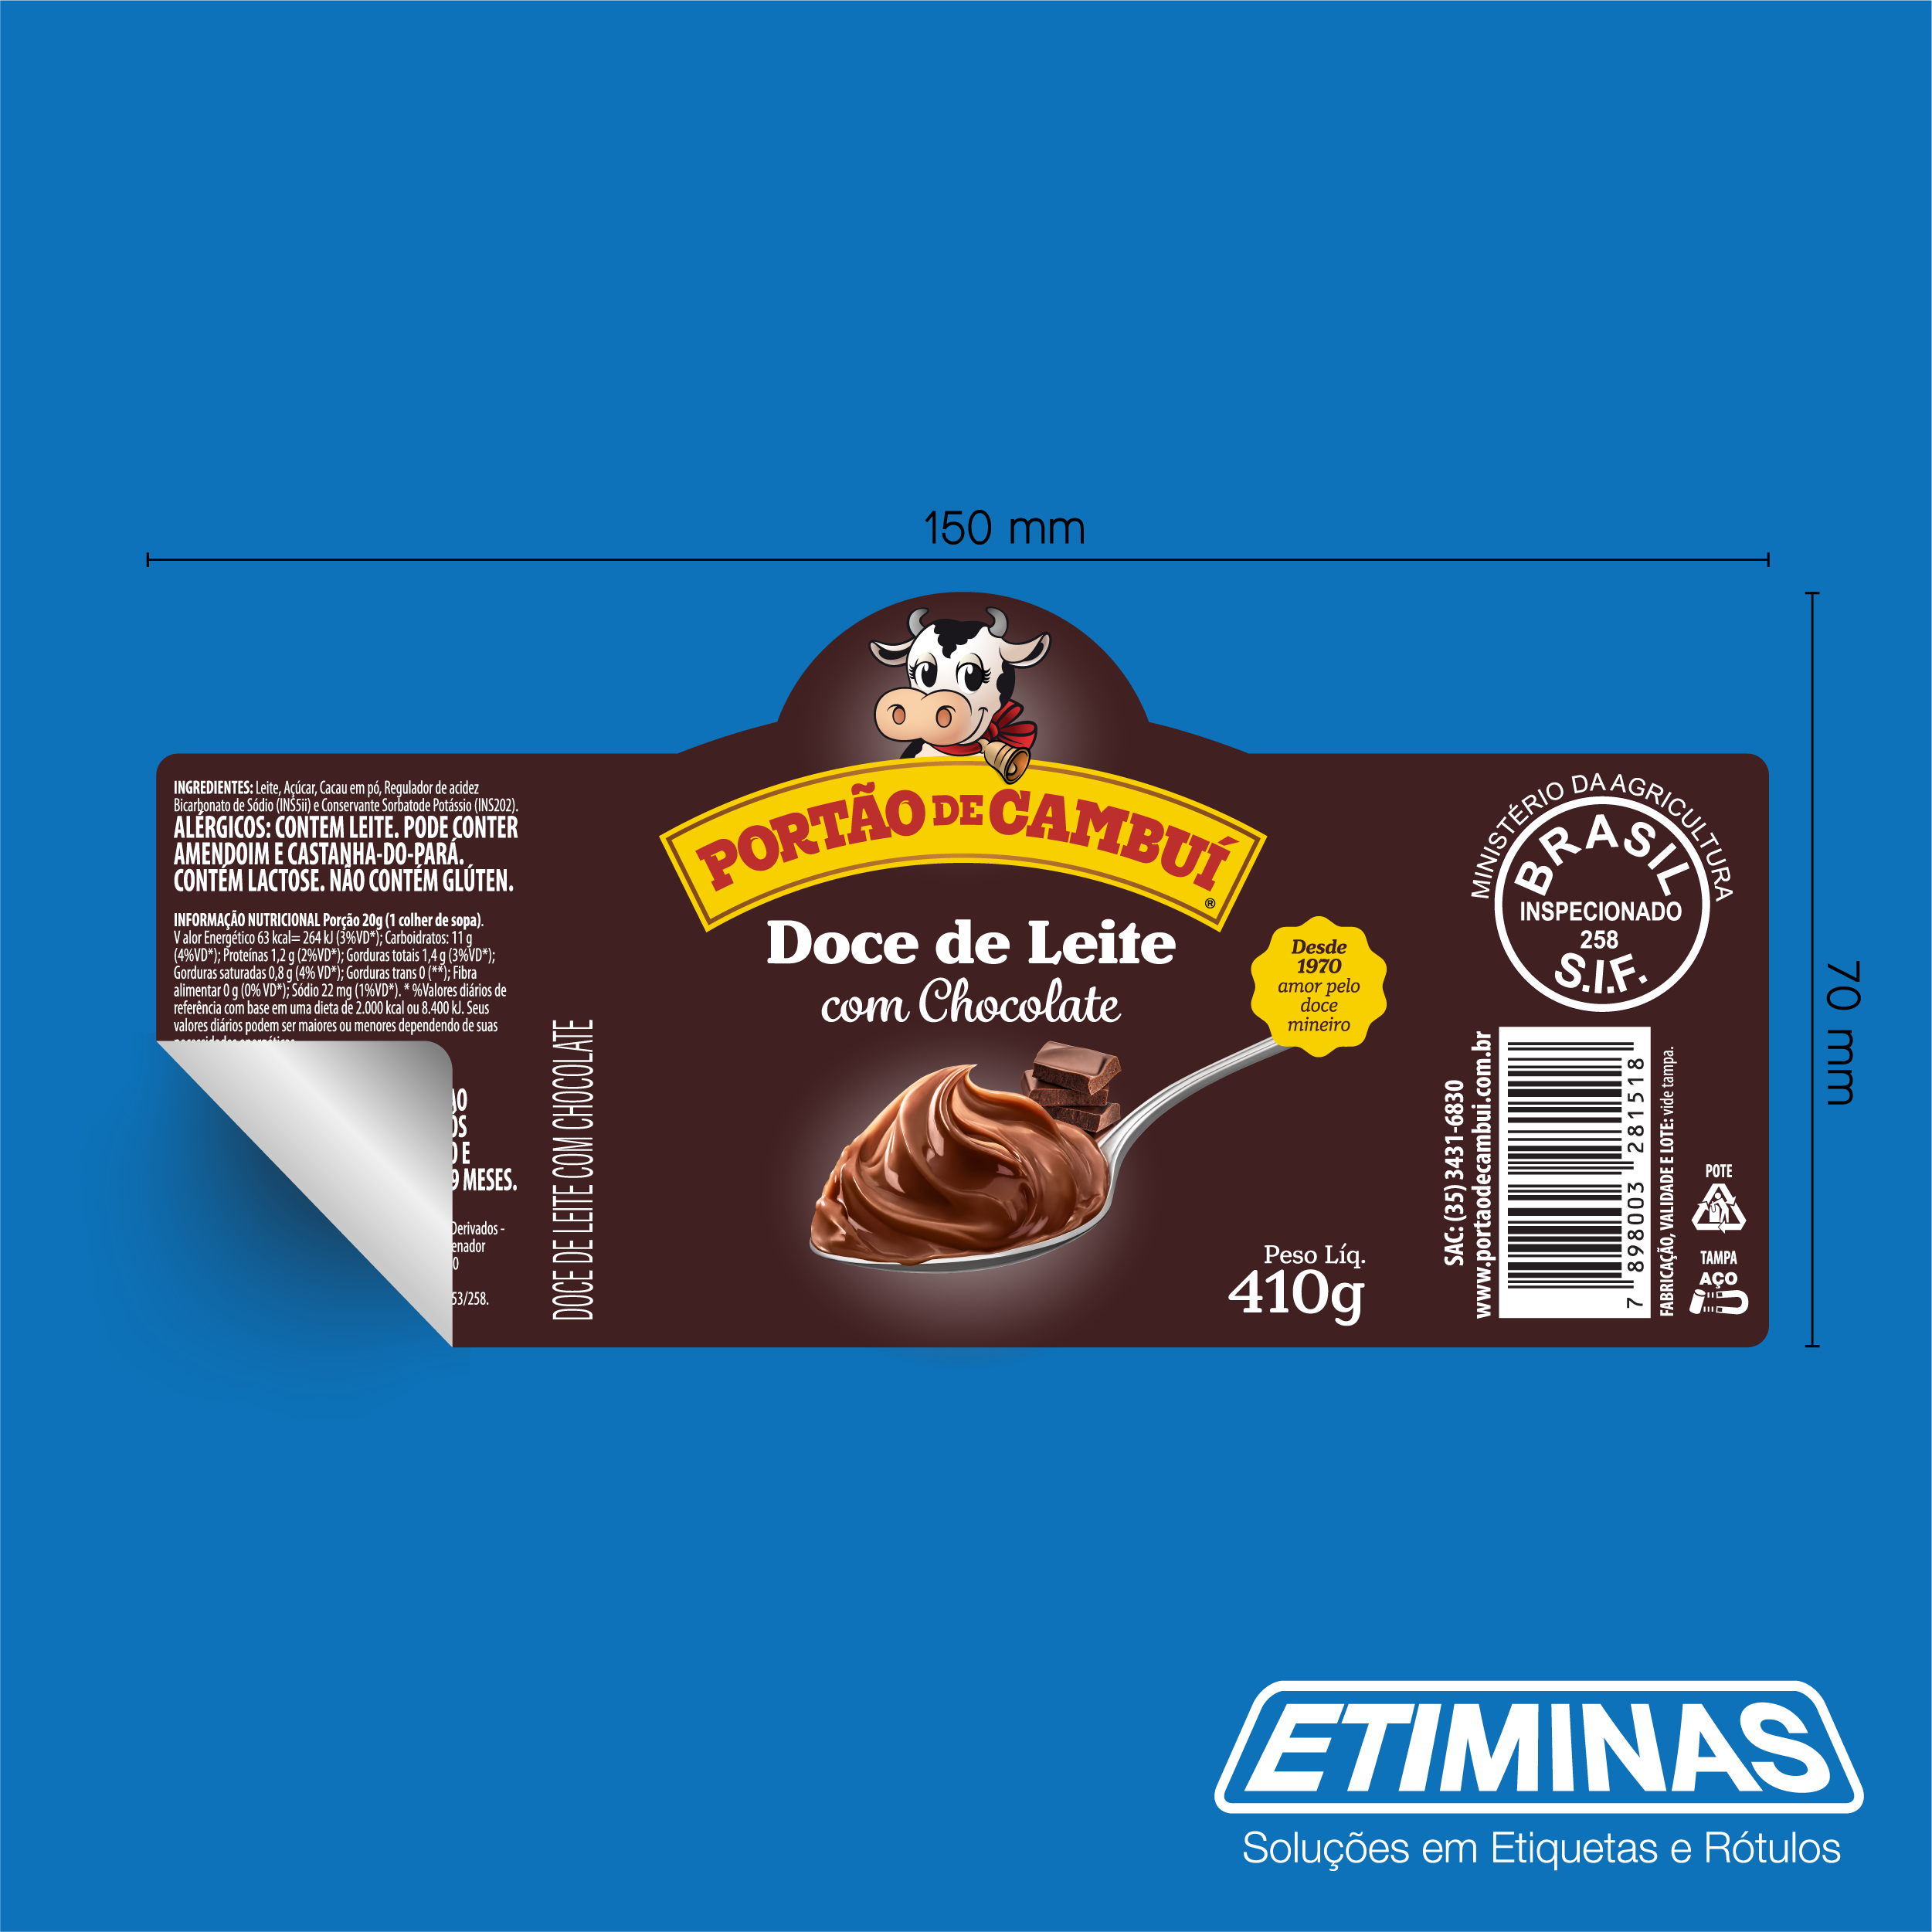 Rótulo Portão de Cambuí - Doce de Leite com Chocolate [150x70]